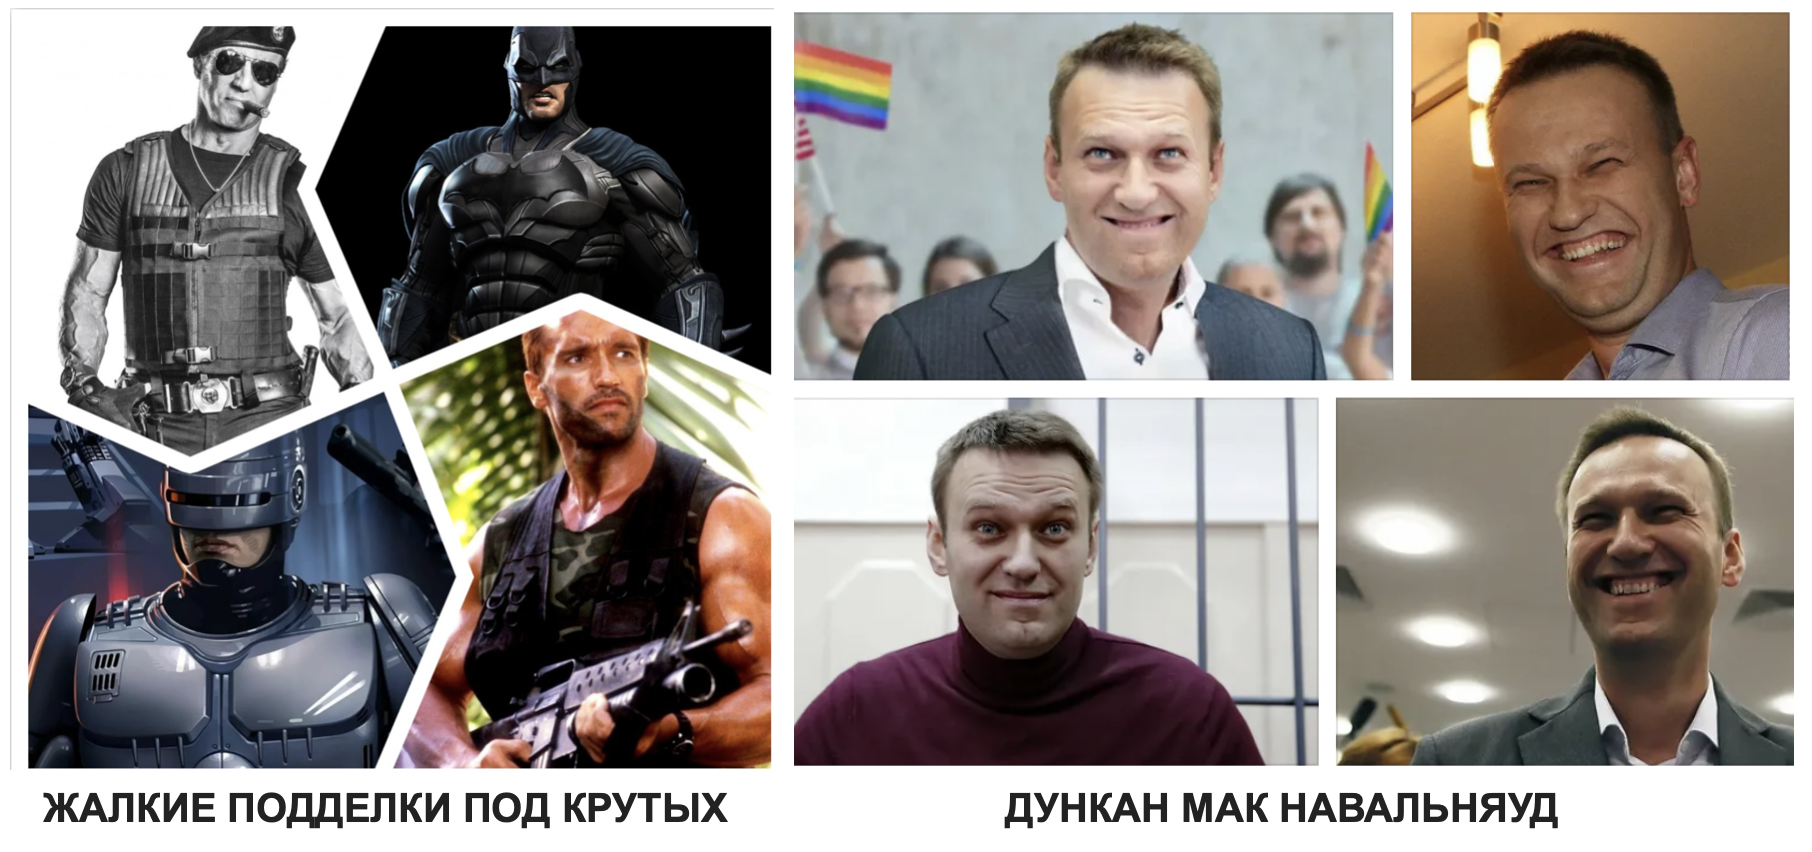 Навальный леха текст. Навальный лёха Эй Навальный лёха у.